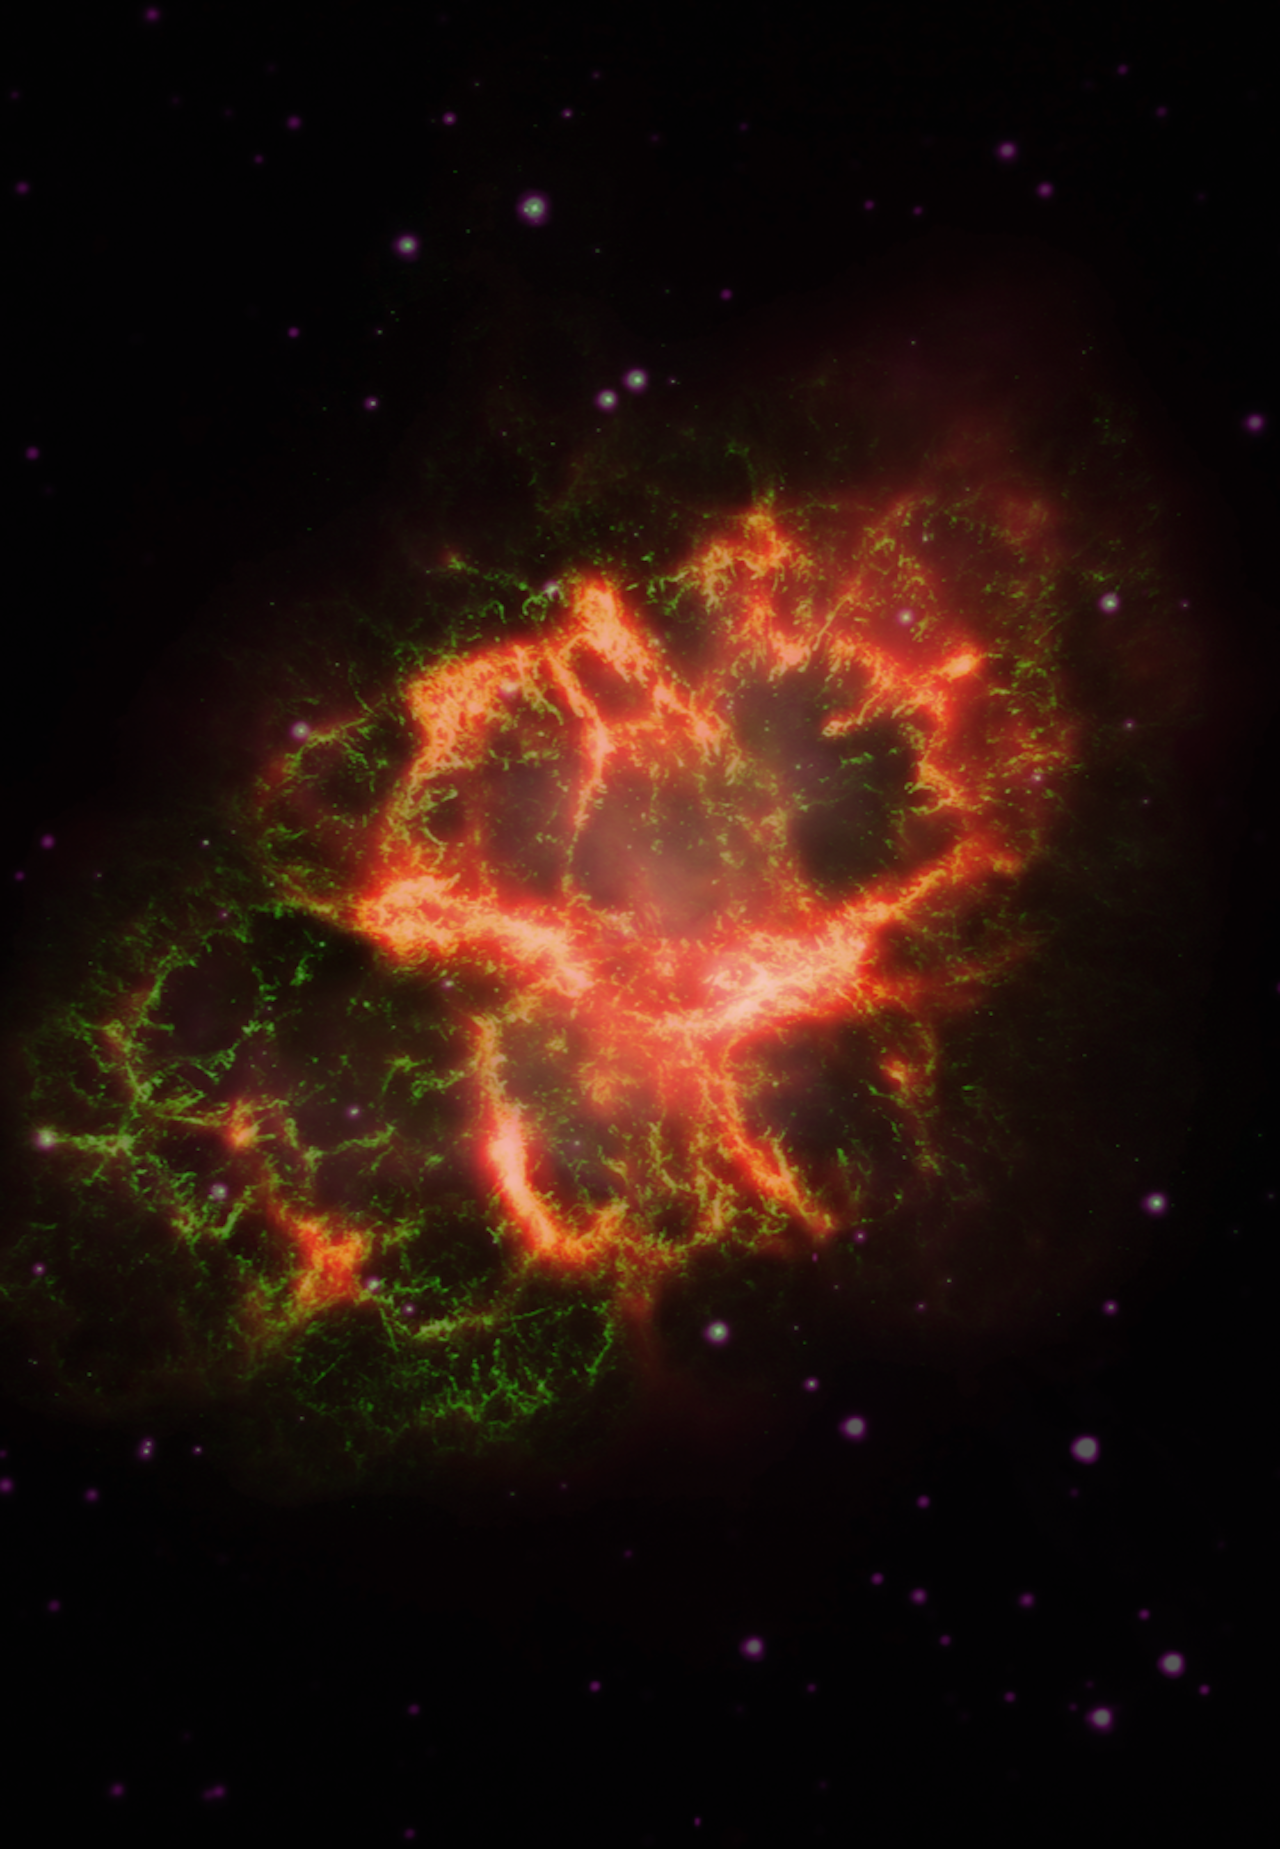 Afbeelding van de Krabnevel, samengesteld uit opnamen in zichtbaar licht, ultraviolet en infrarood